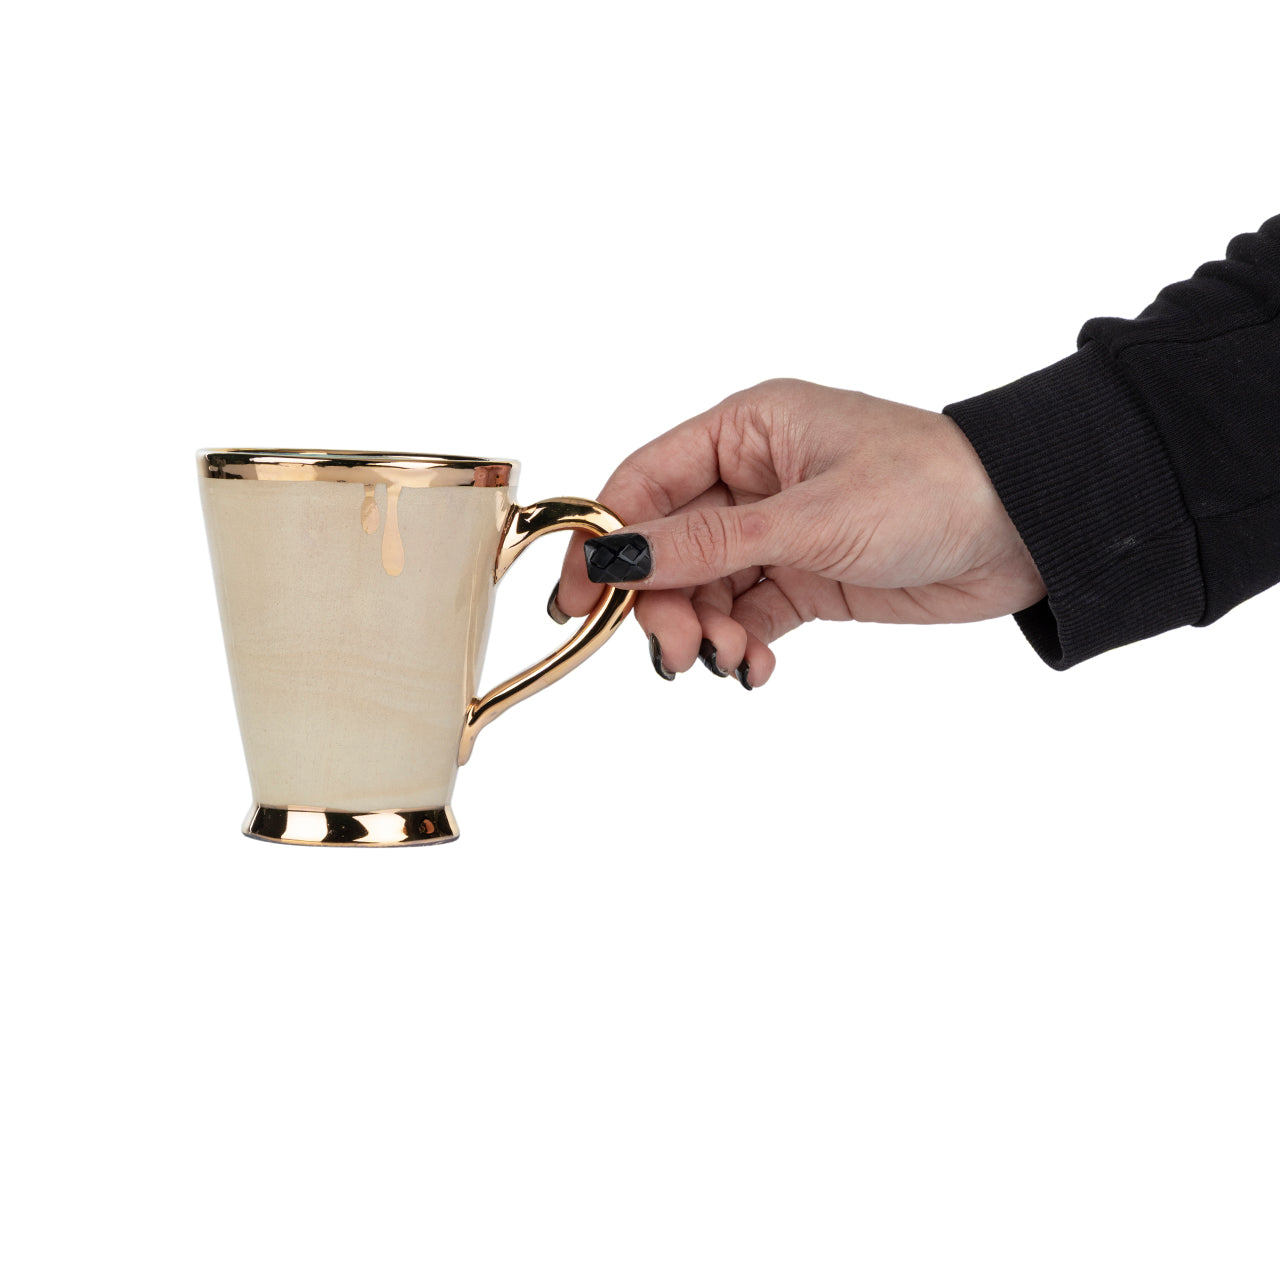 Turquoise Ceramic Mug - with 11K gold-plated edges